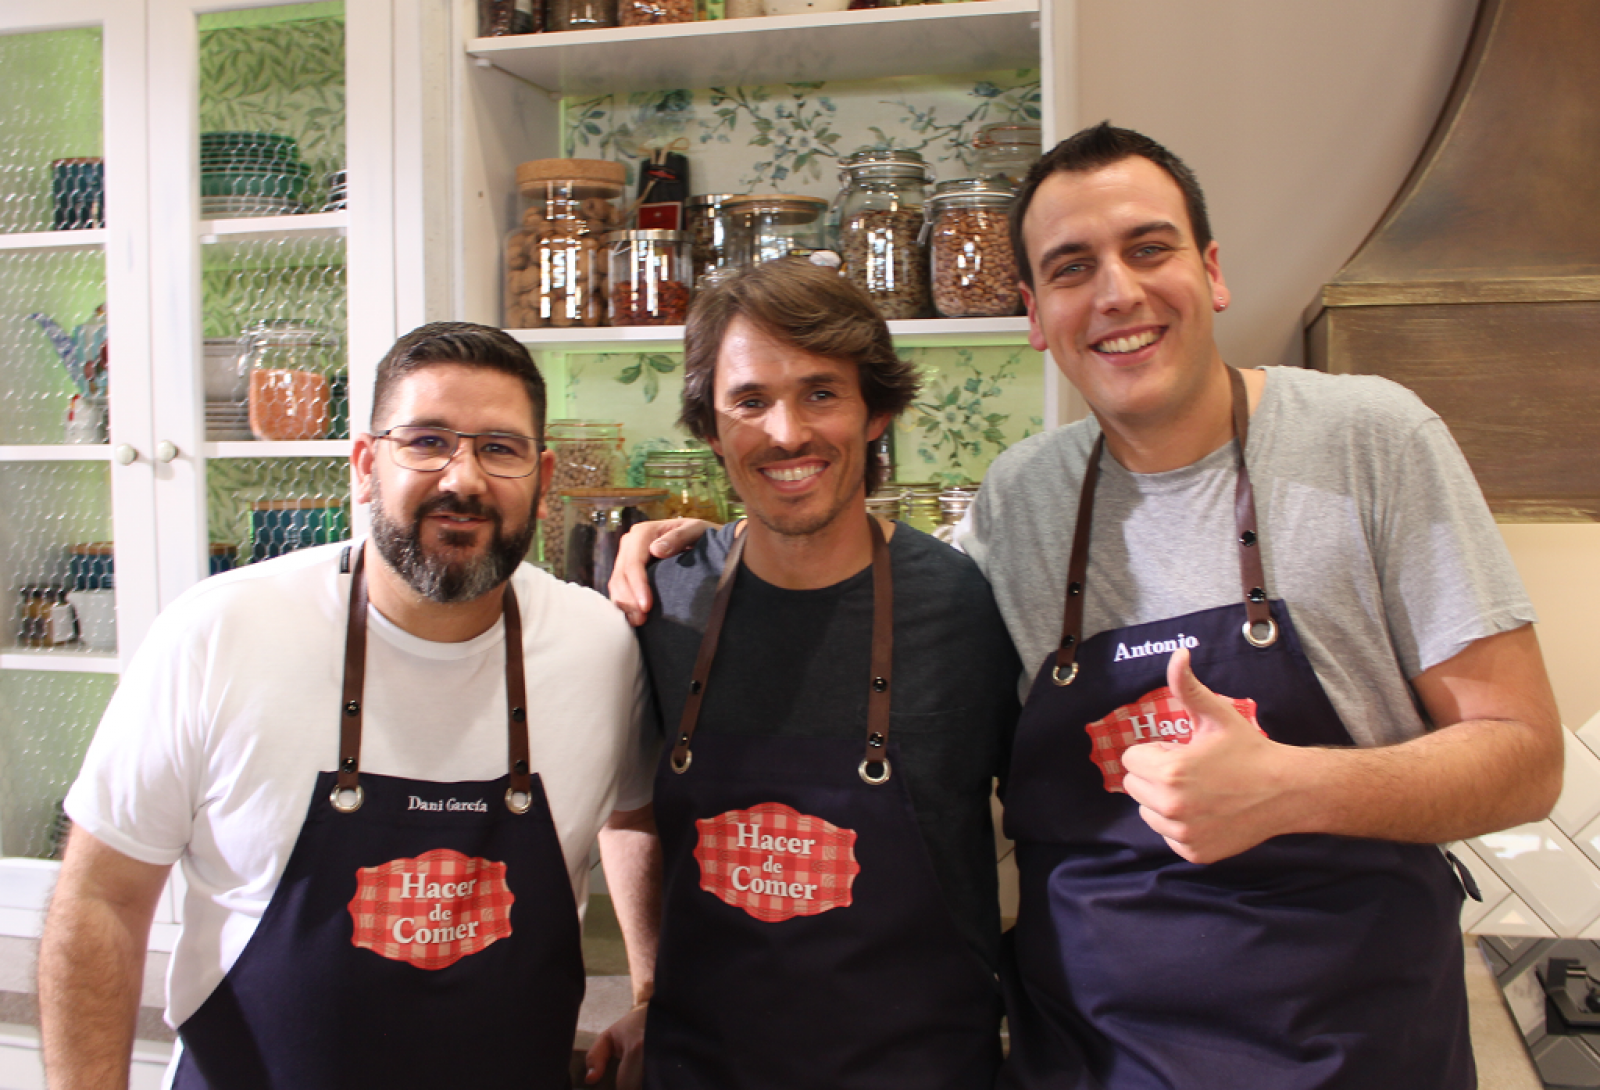 El chef Nino Redruello visita "Hacer de comer"